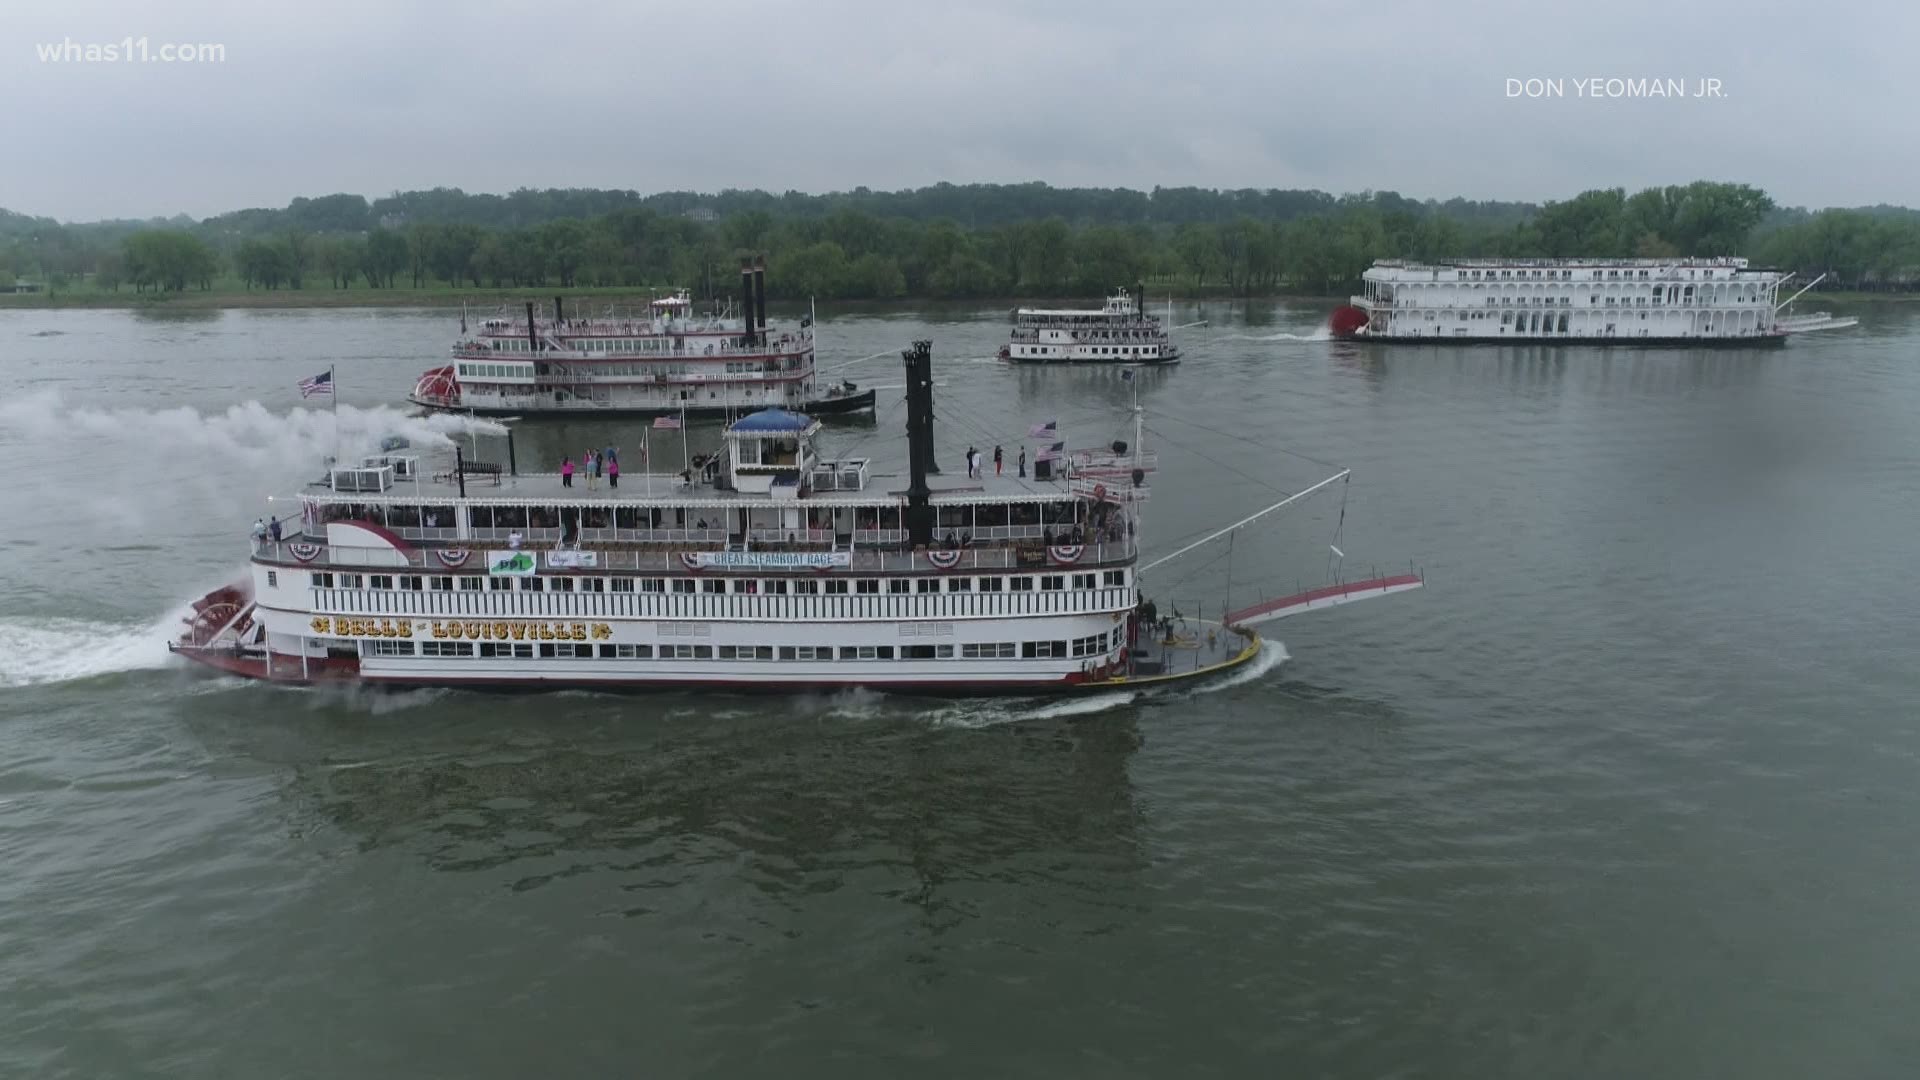 Belle of Louisville wins 2021 Great Steamboat Race